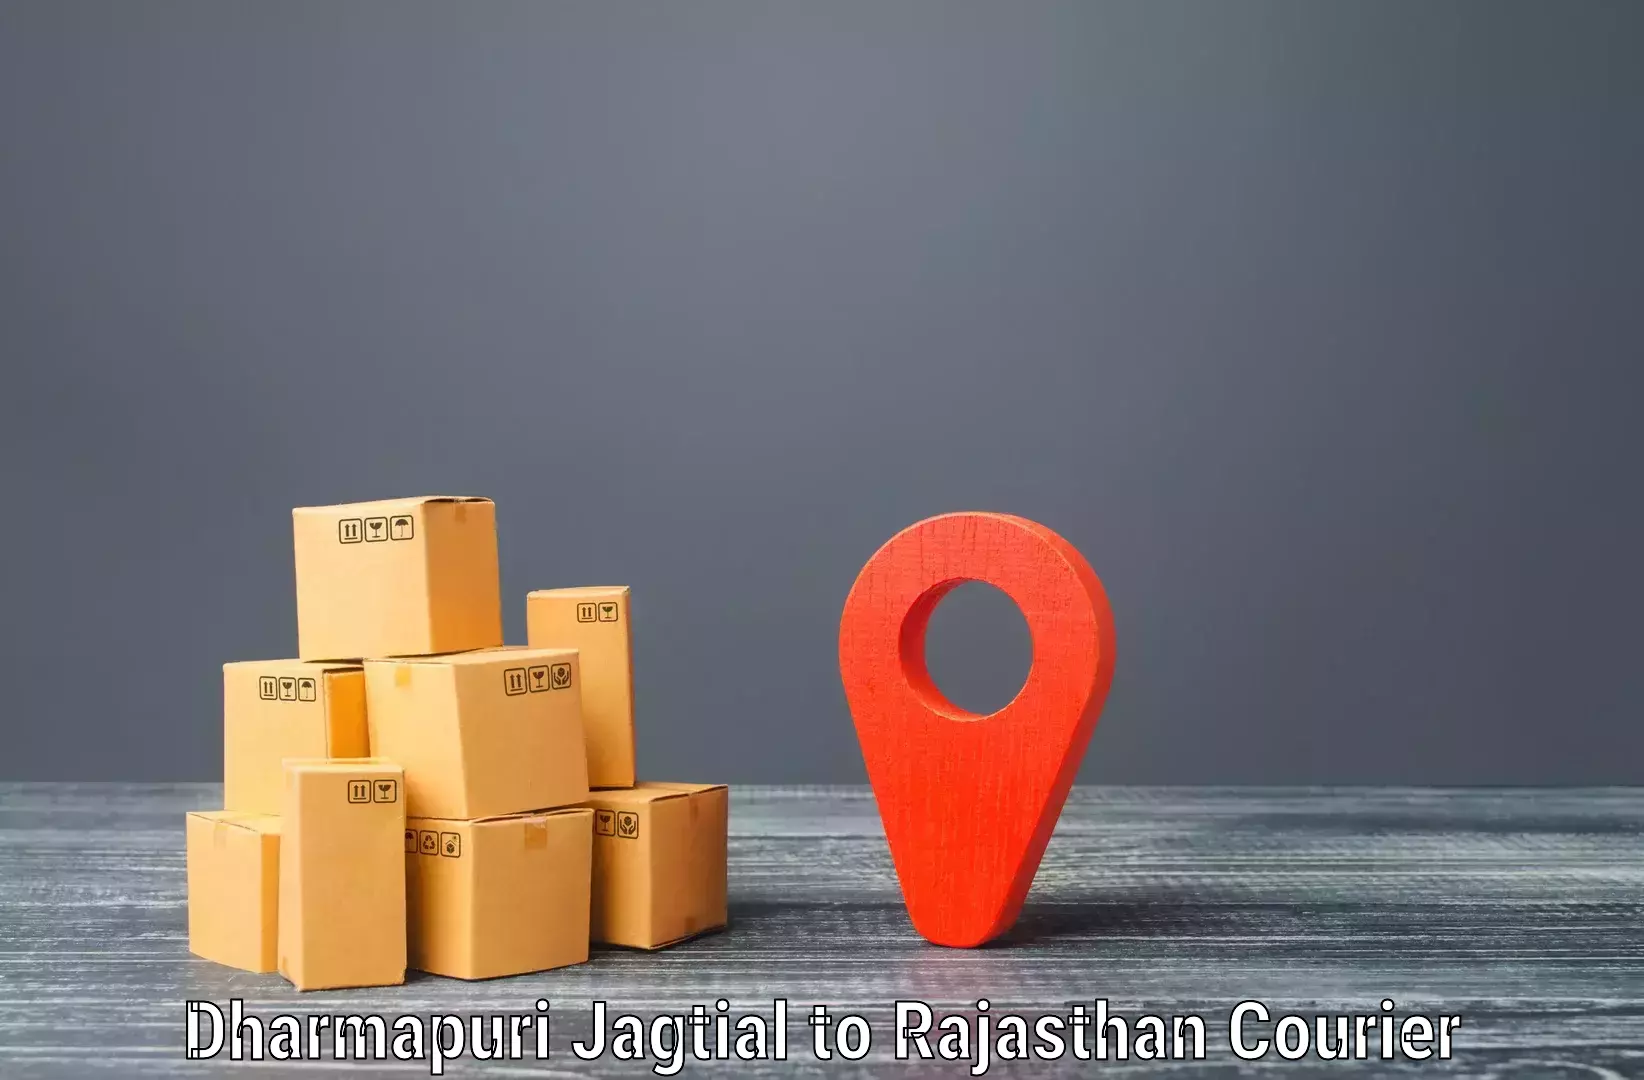 Express delivery solutions Dharmapuri Jagtial to Churu